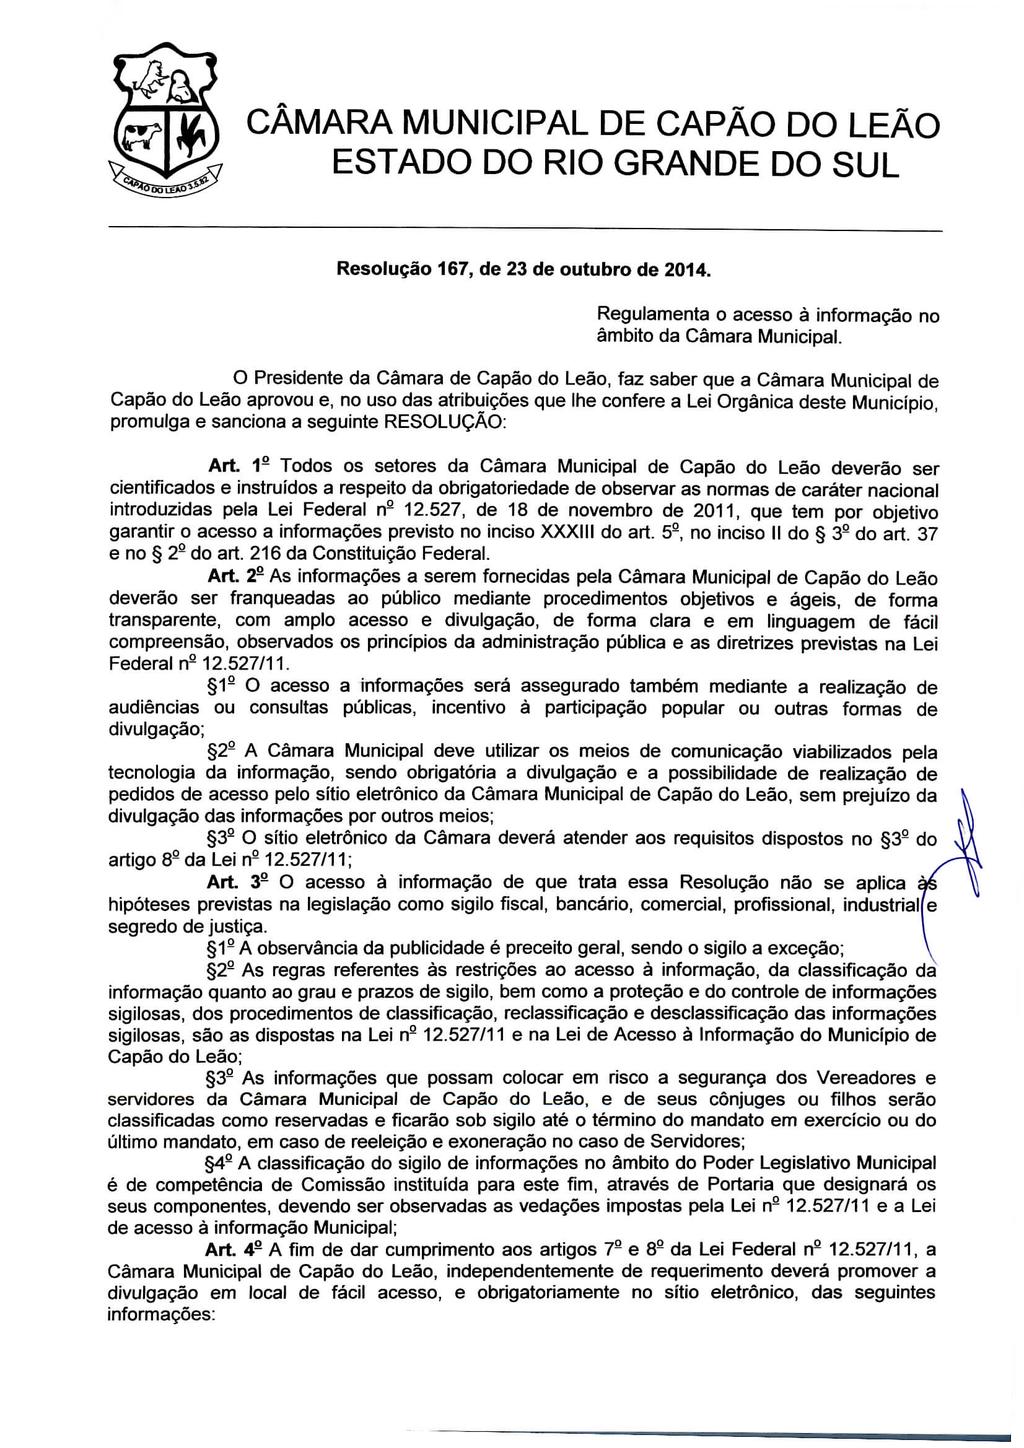 Resolução 167, de 23 de outubro de 2014. Regulamenta o acesso à informação no âmbito da Câmara Municipal.